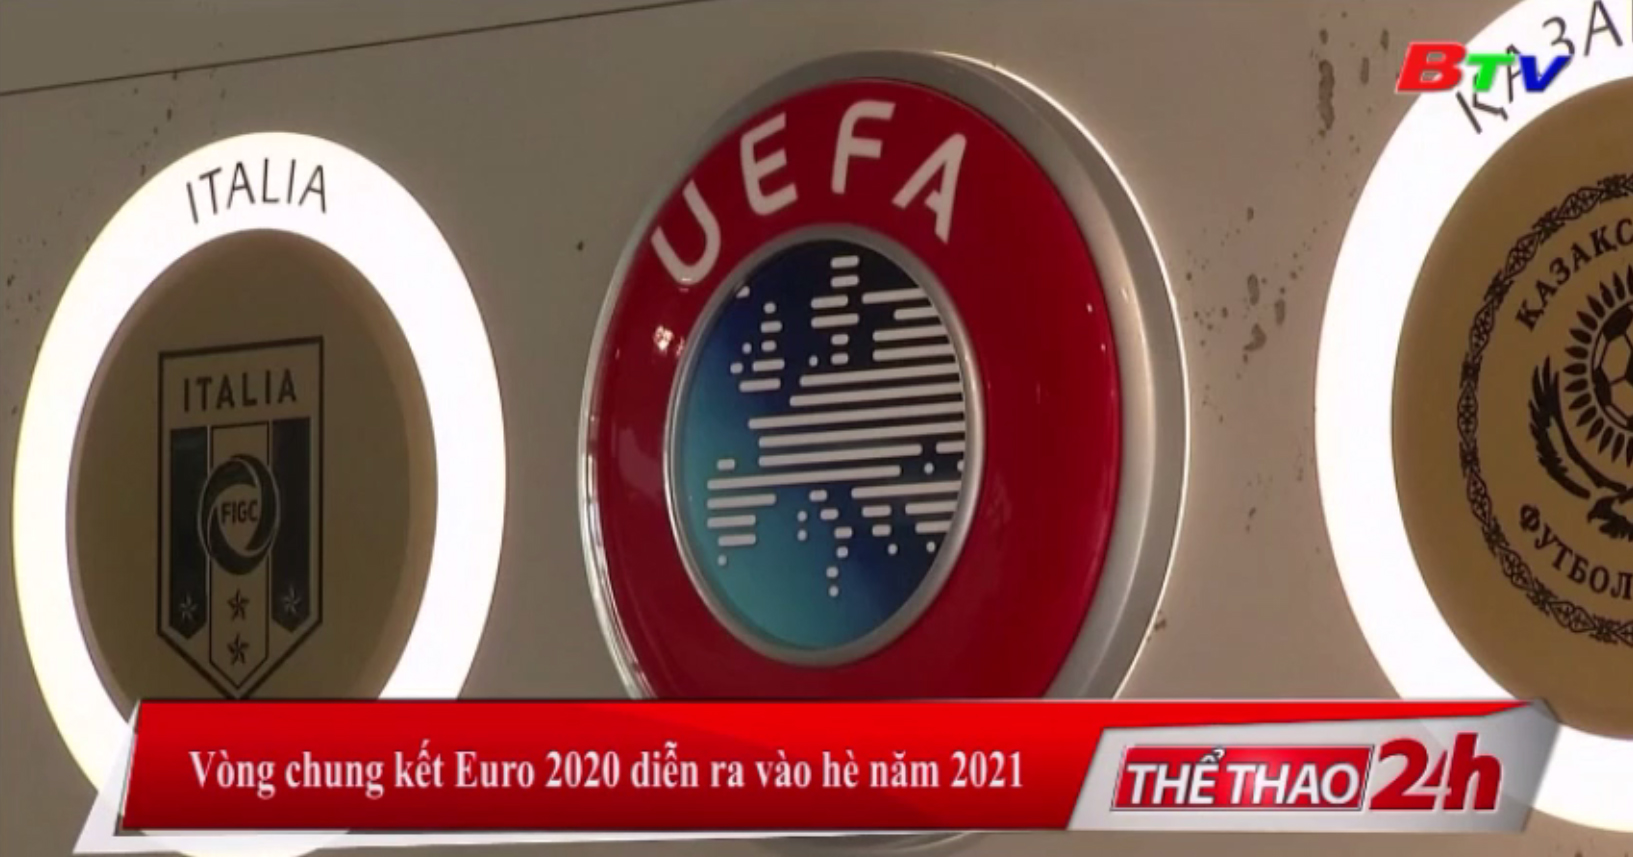 Vòng chung kết Euro 2020 diễn ra vào hè năm 2021